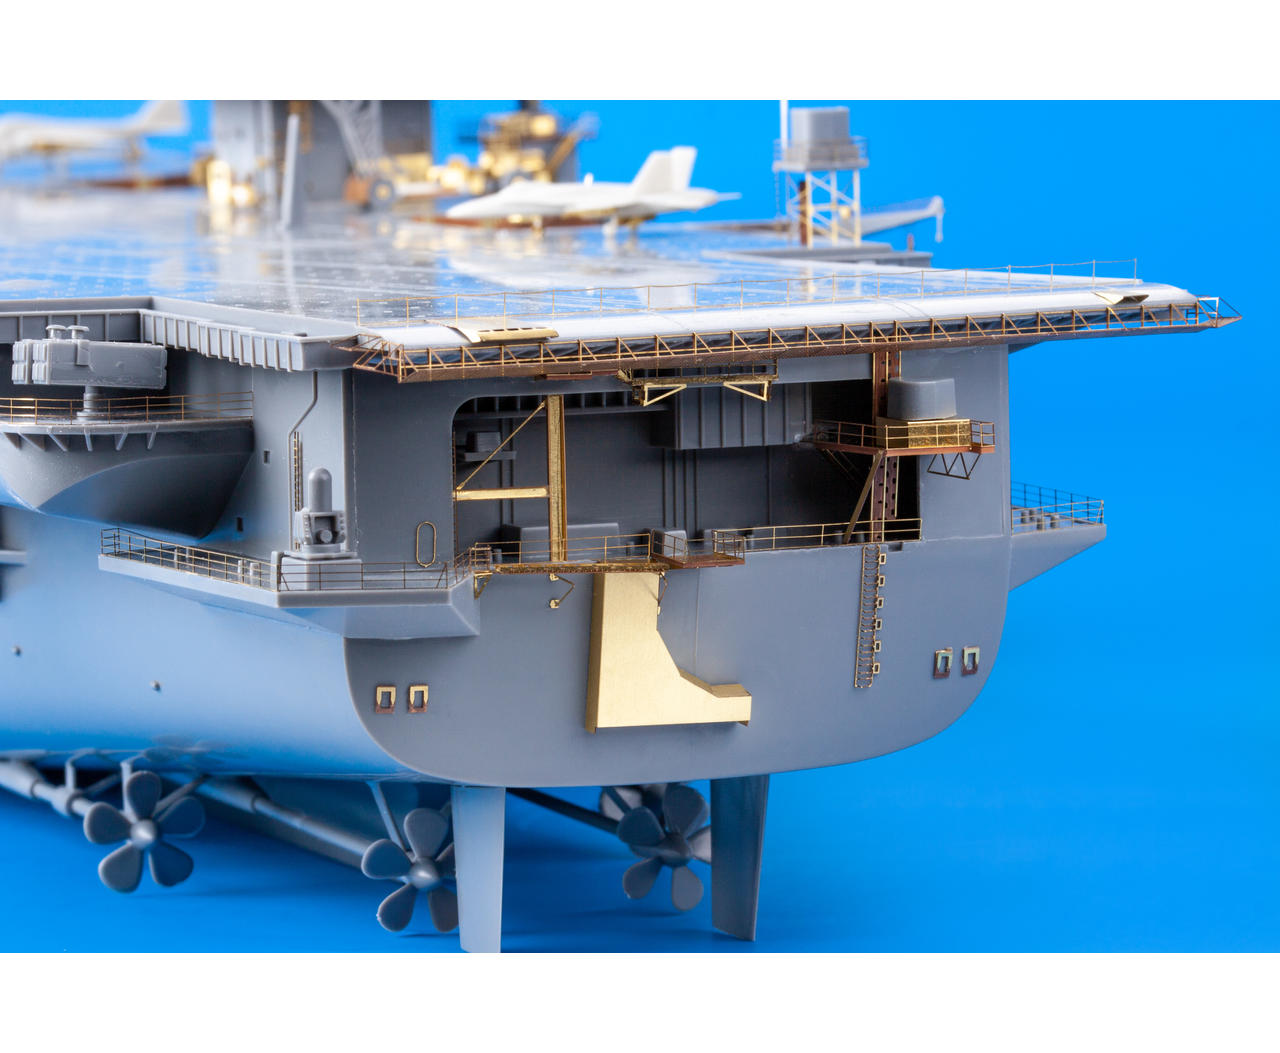 Eduard 1/350 USS Enterprise Cvn-65 Part 1 # 53223 for sale online